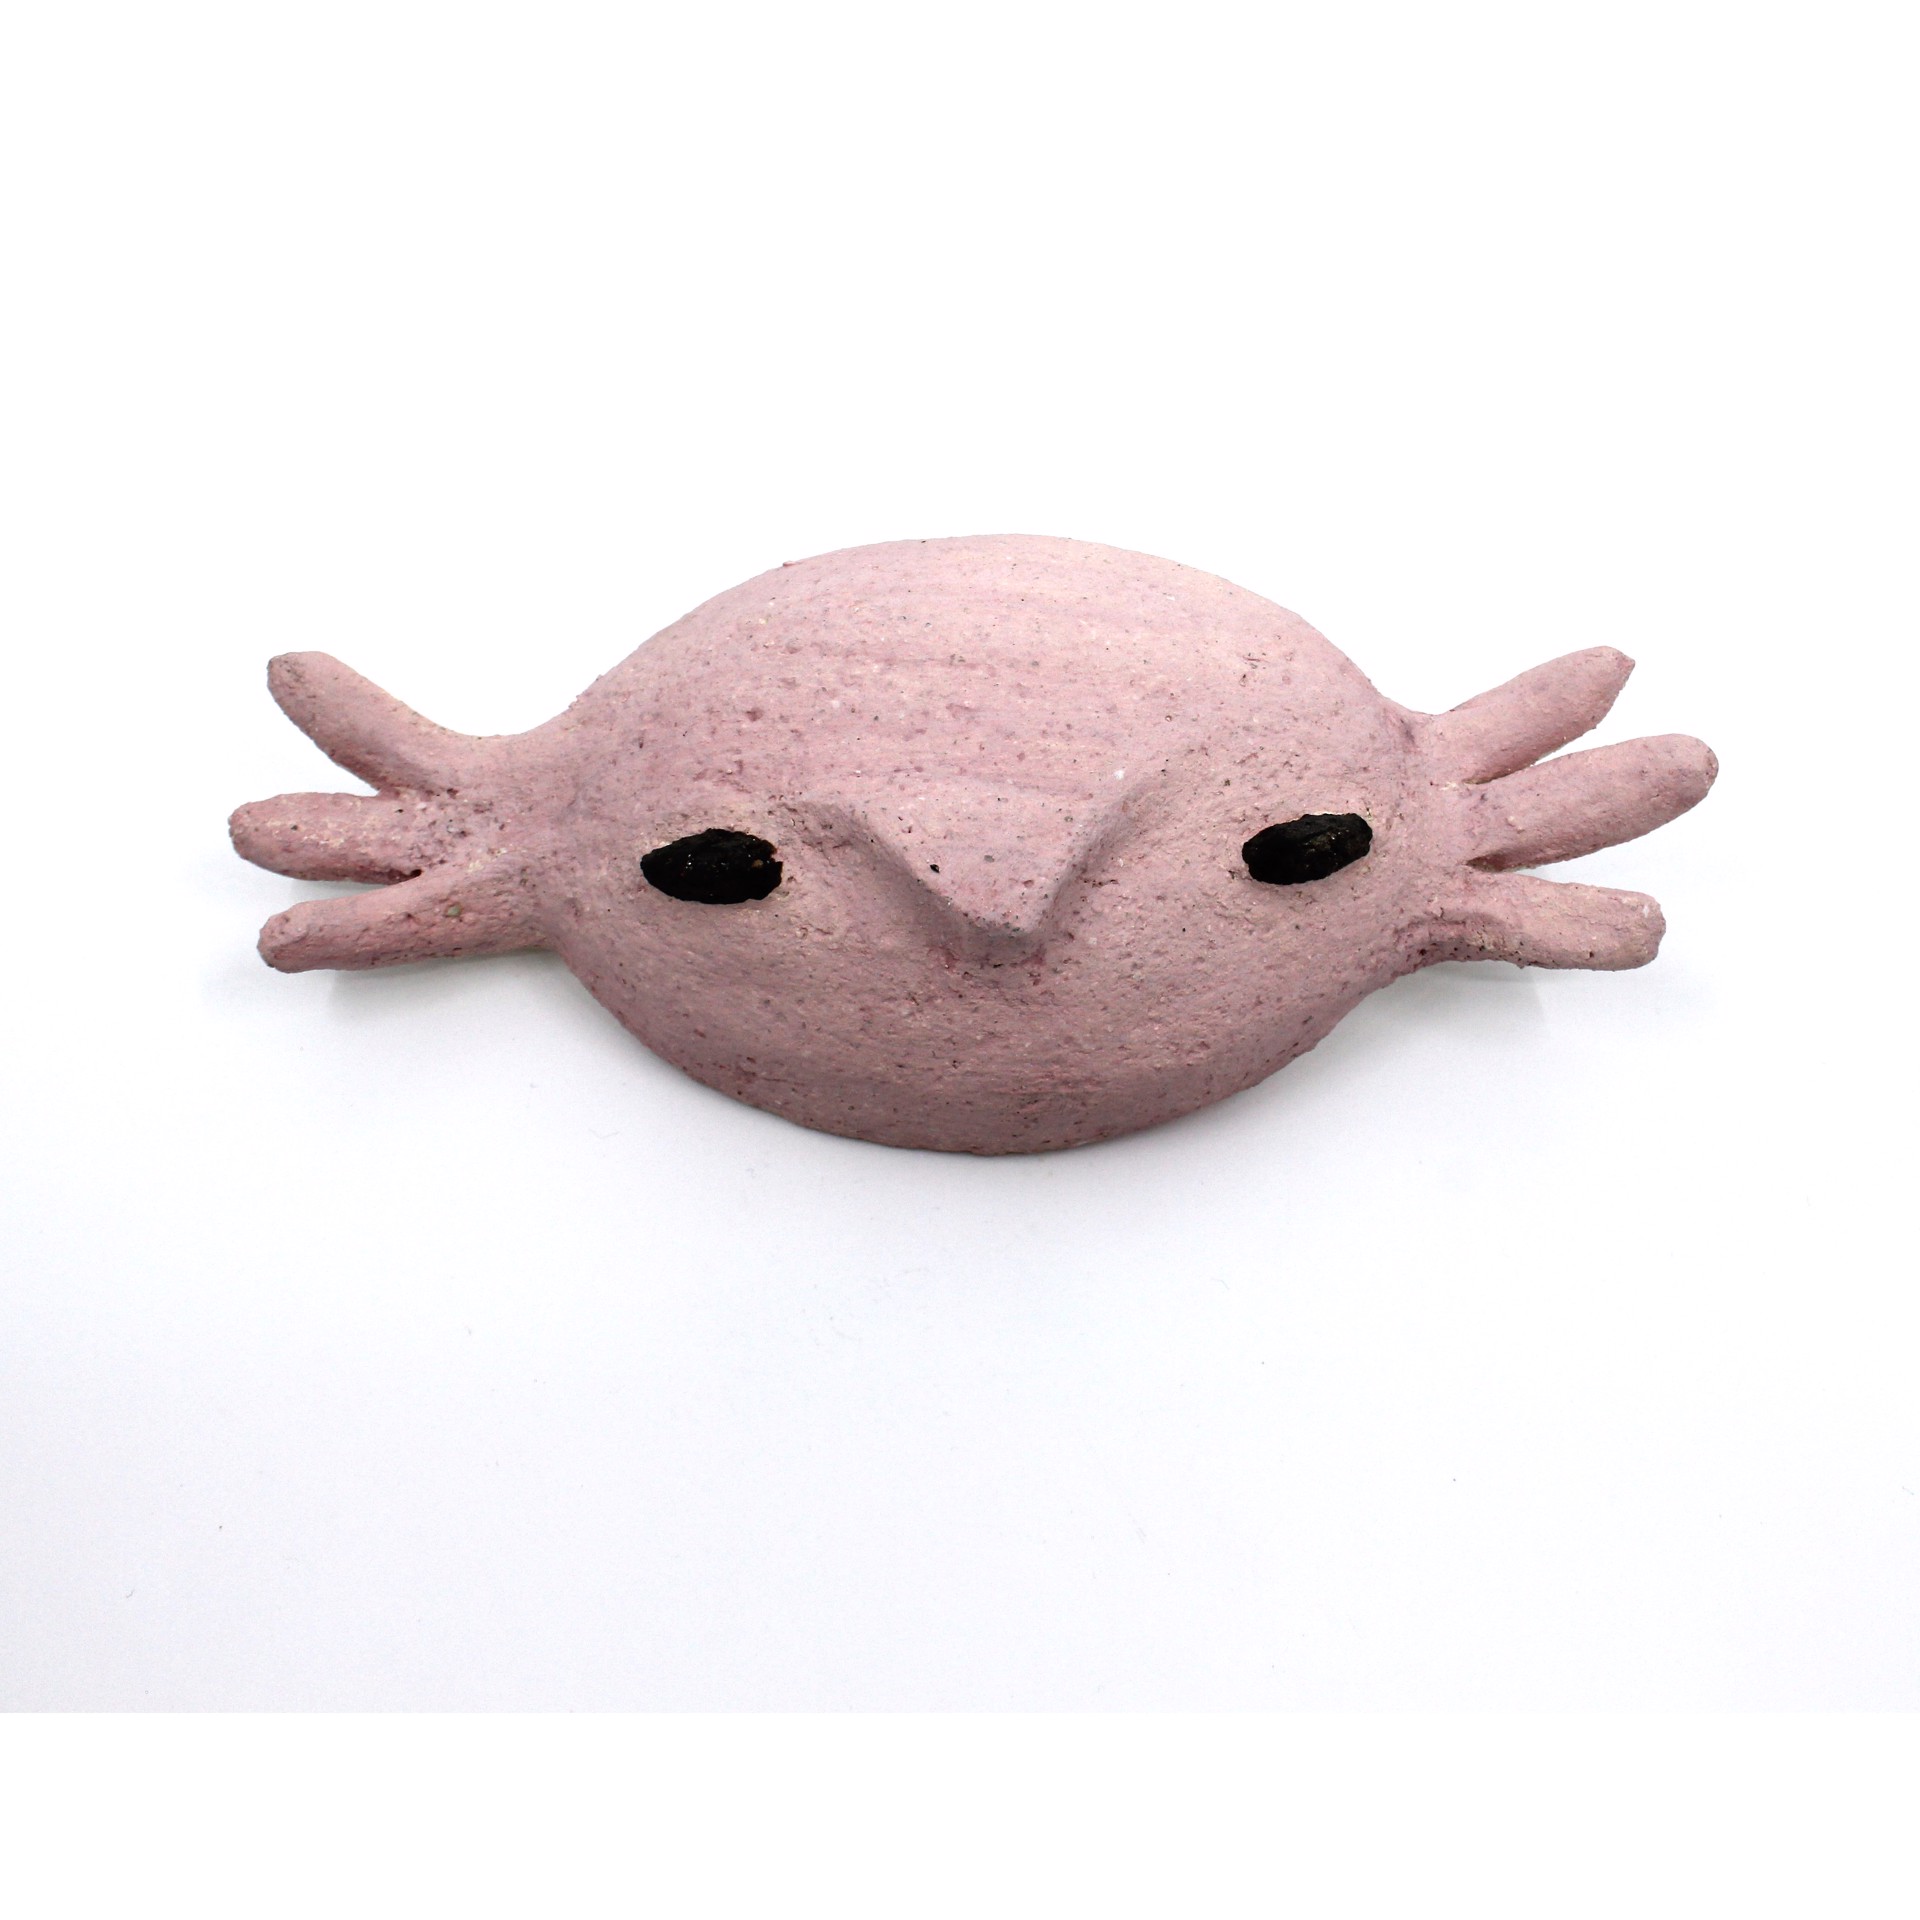 Mascara Axolotl Grande by Iohan Figueroa